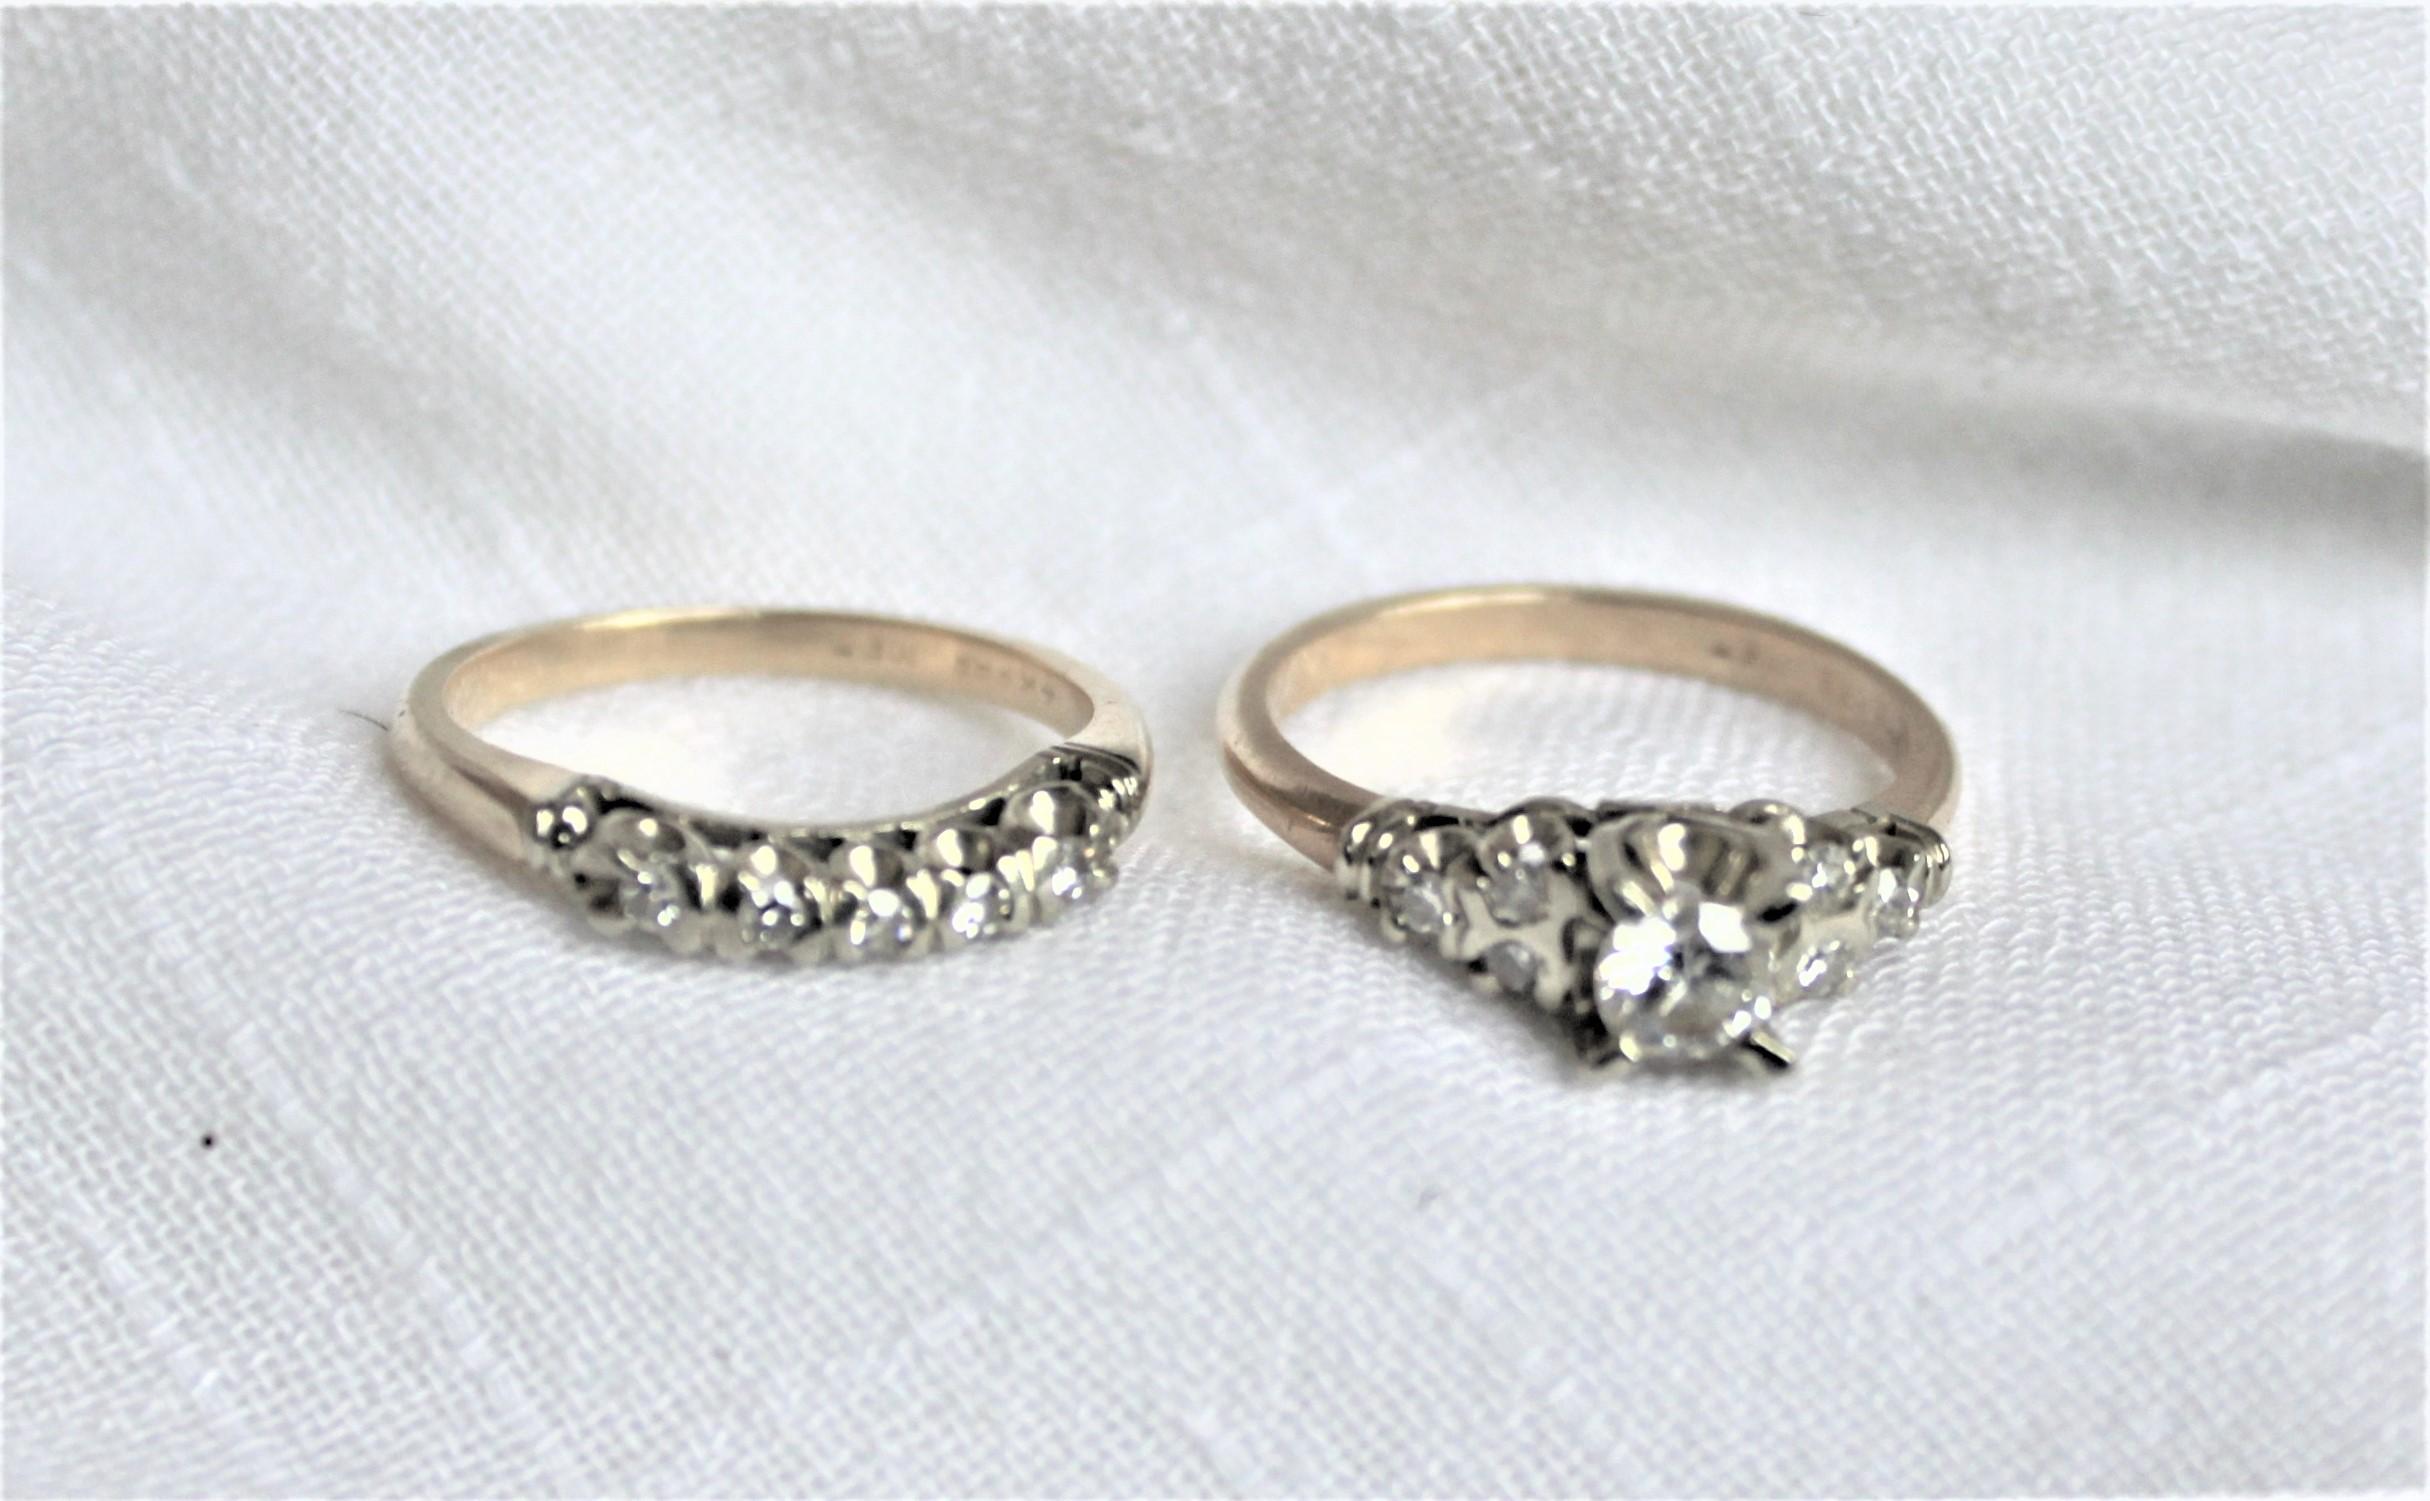 1960 vintage wedding ring sets